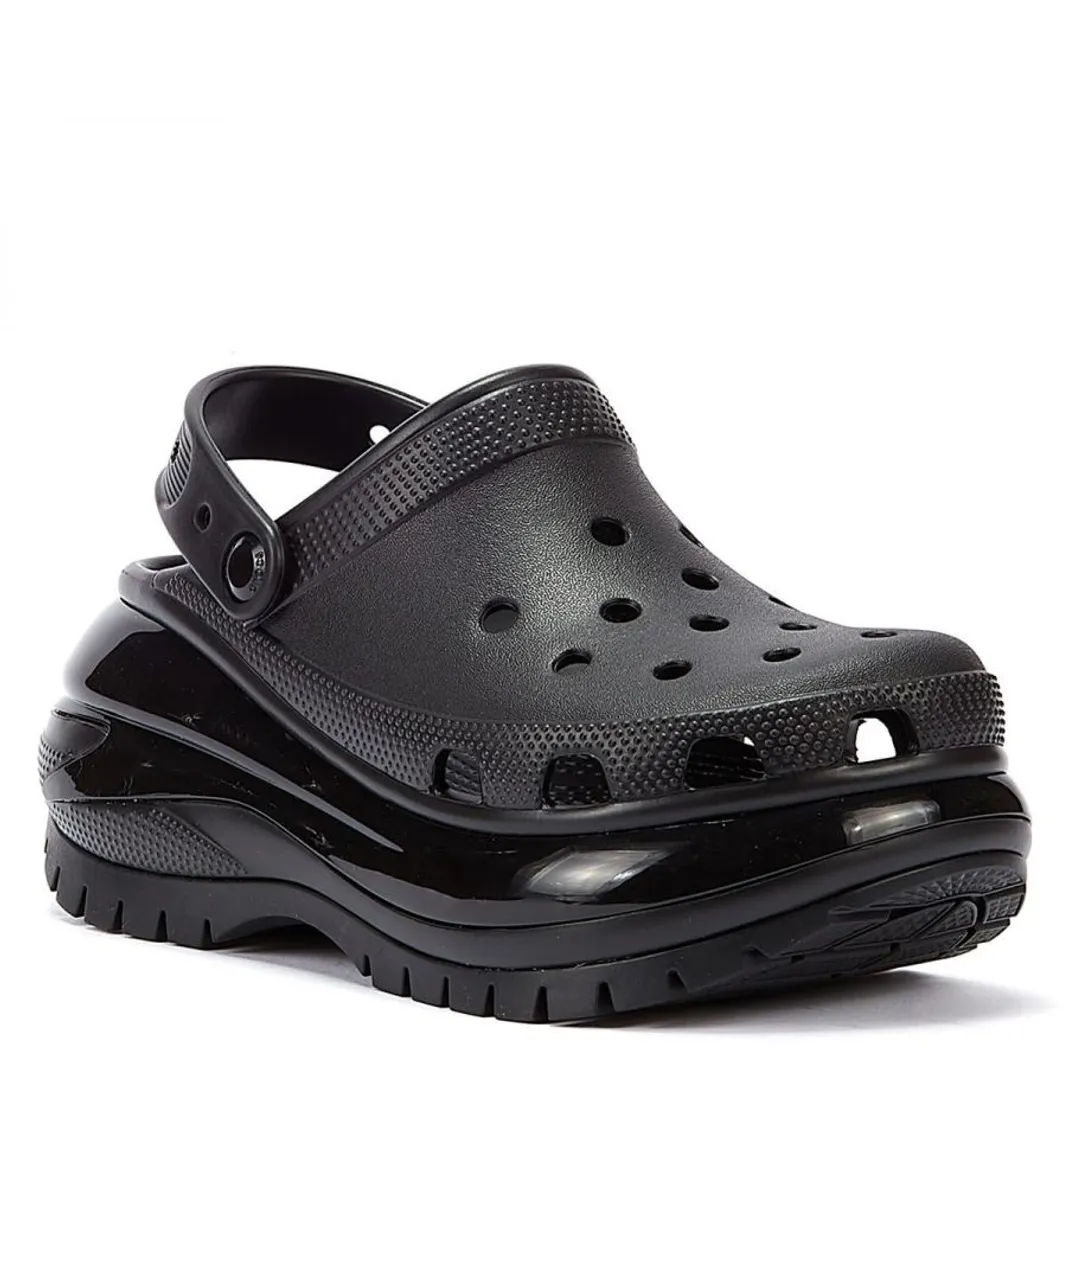 Crocs Classic Mega Crush Clog WoMens Black Sandals